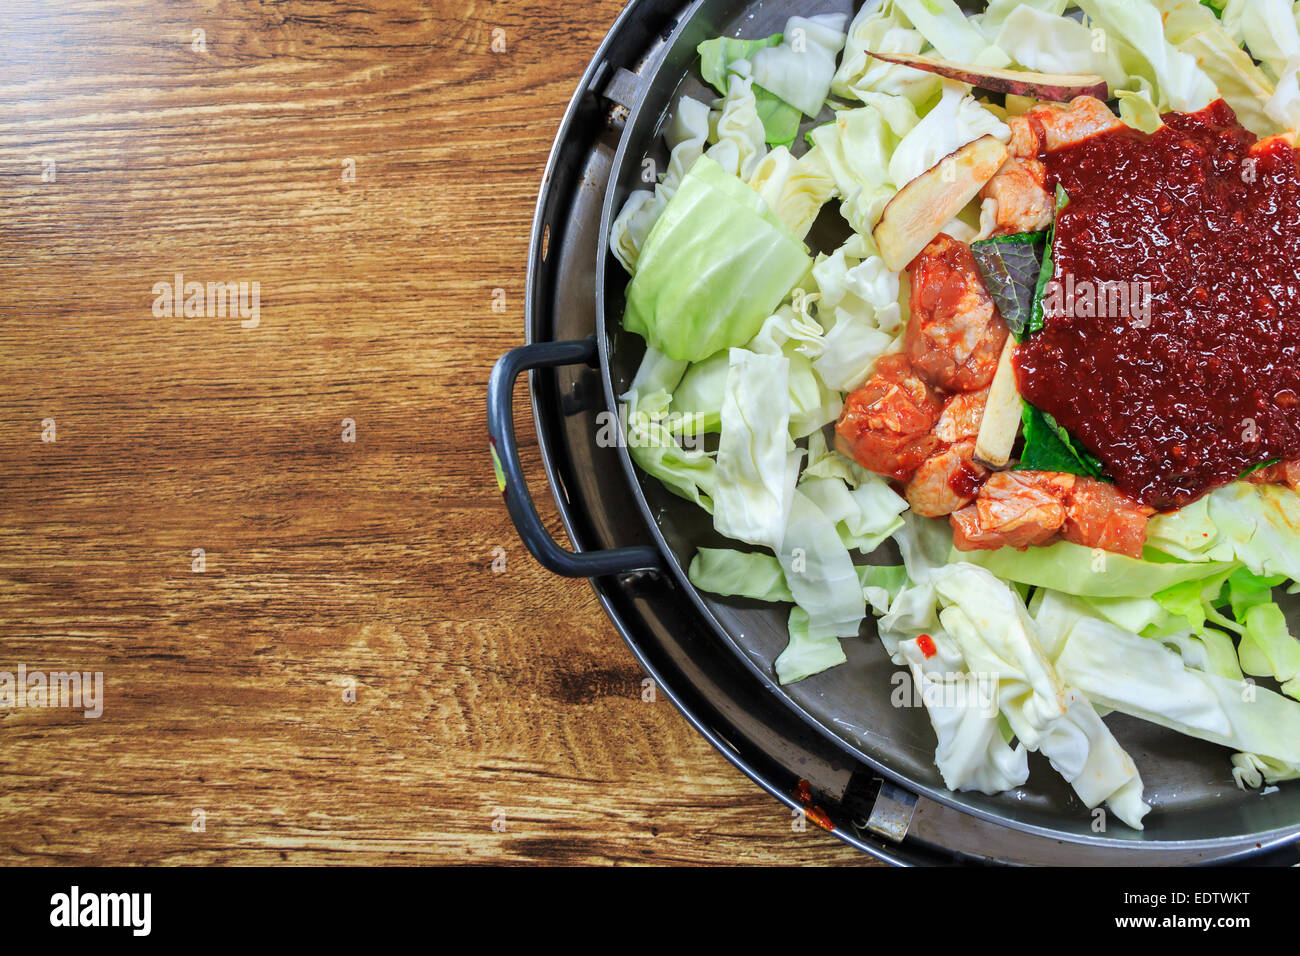 Würze des koreanisches Essen auf Pfanne zu komponieren, frischem Salat, Huhn, Ketchup auf Holztisch mit leeren Bereich auf der linken Seite Stockfoto